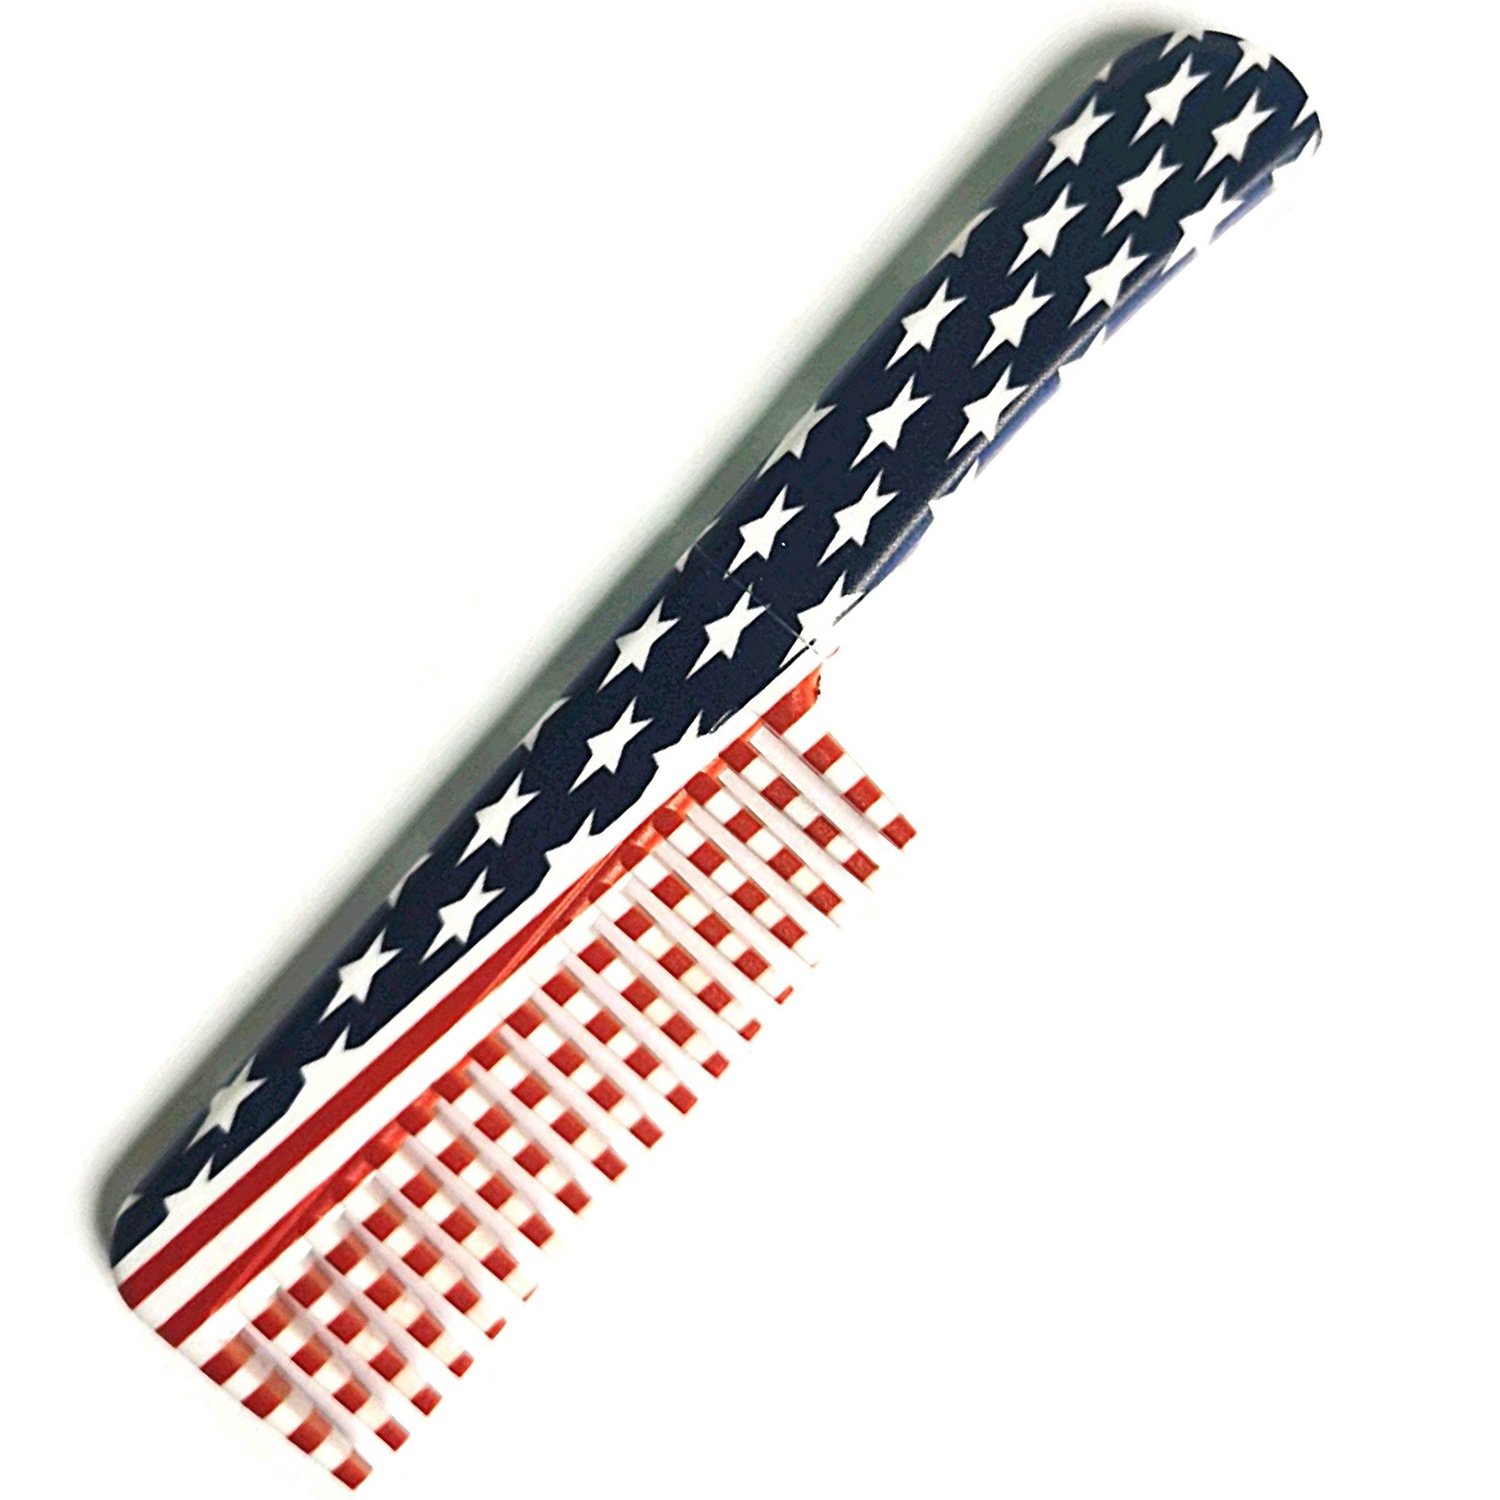 Comb Knife USA Flag